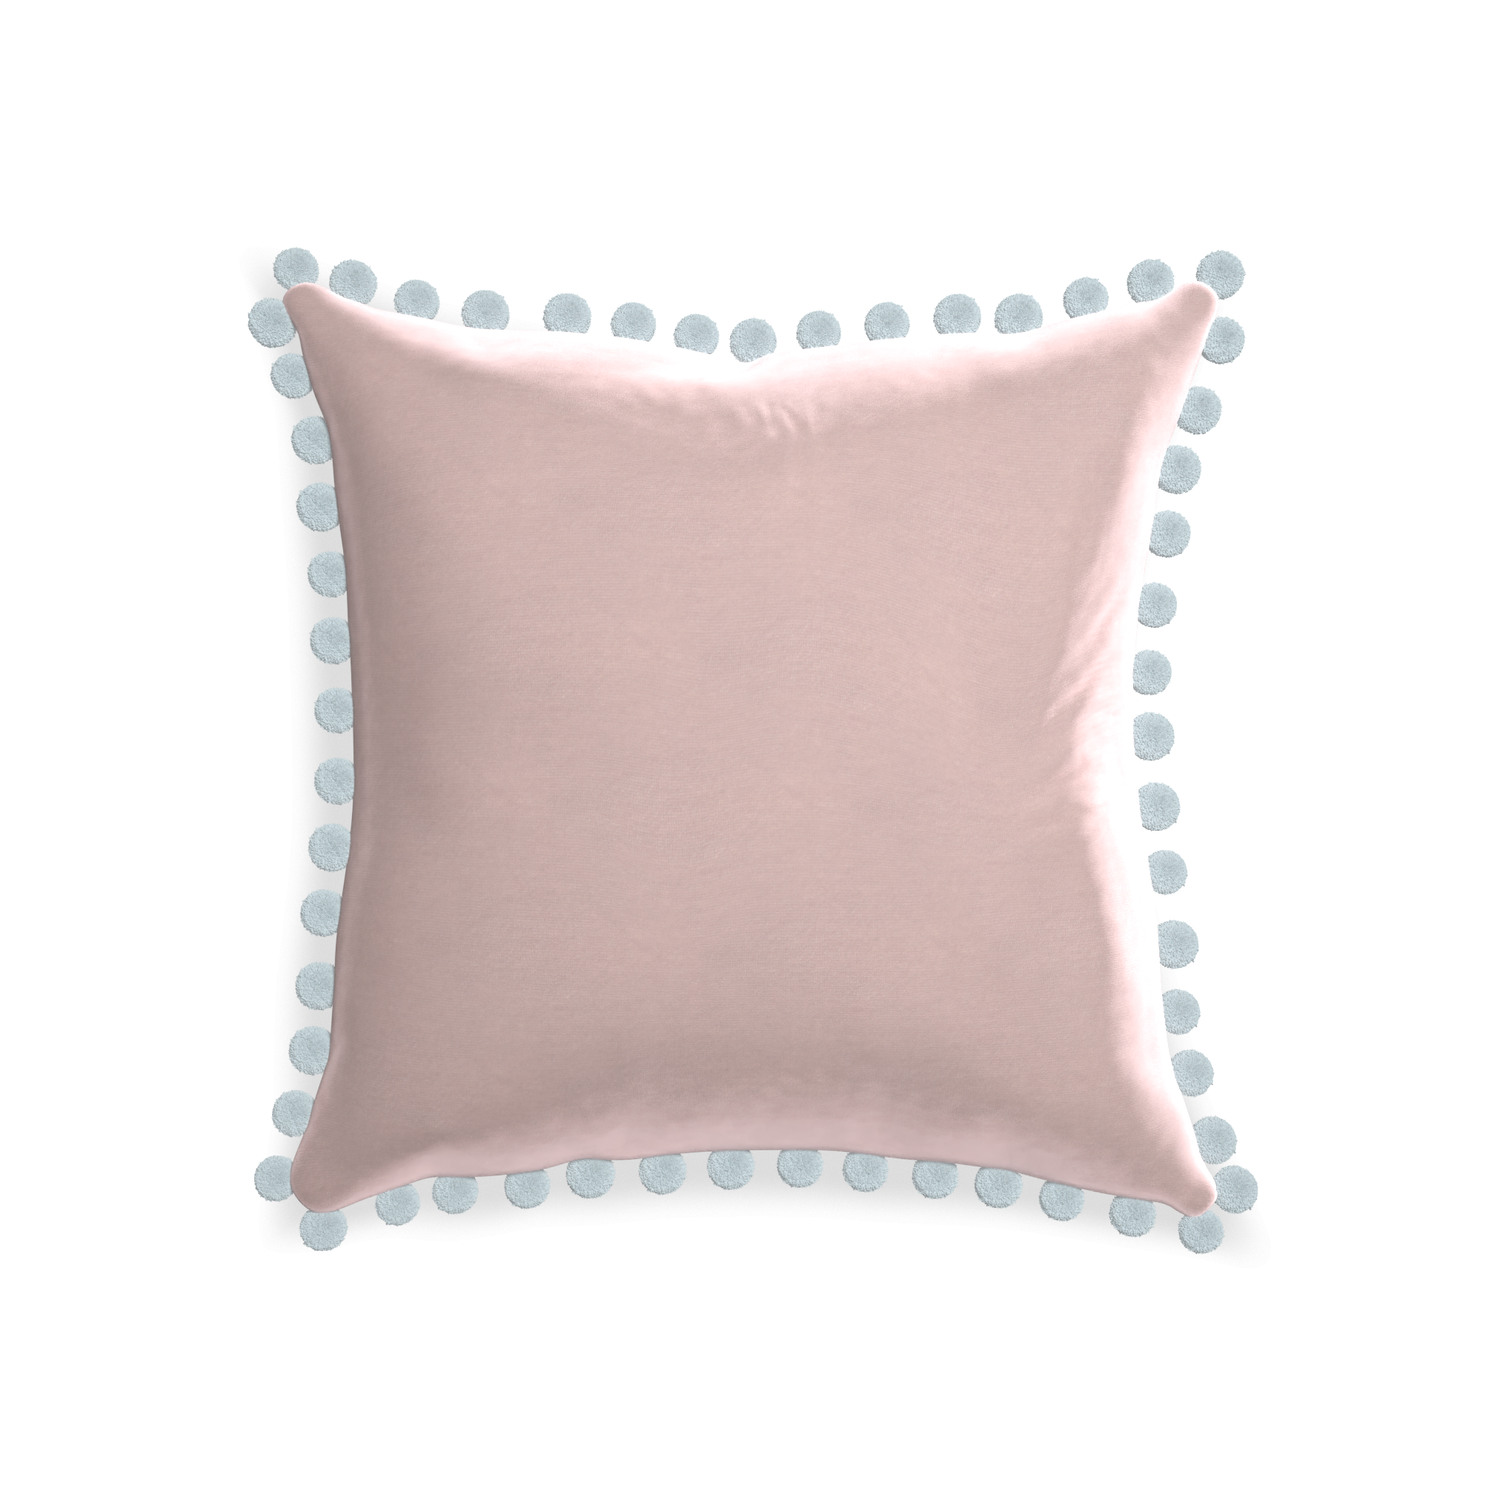 square light pink velvet pillow with light blue pom poms